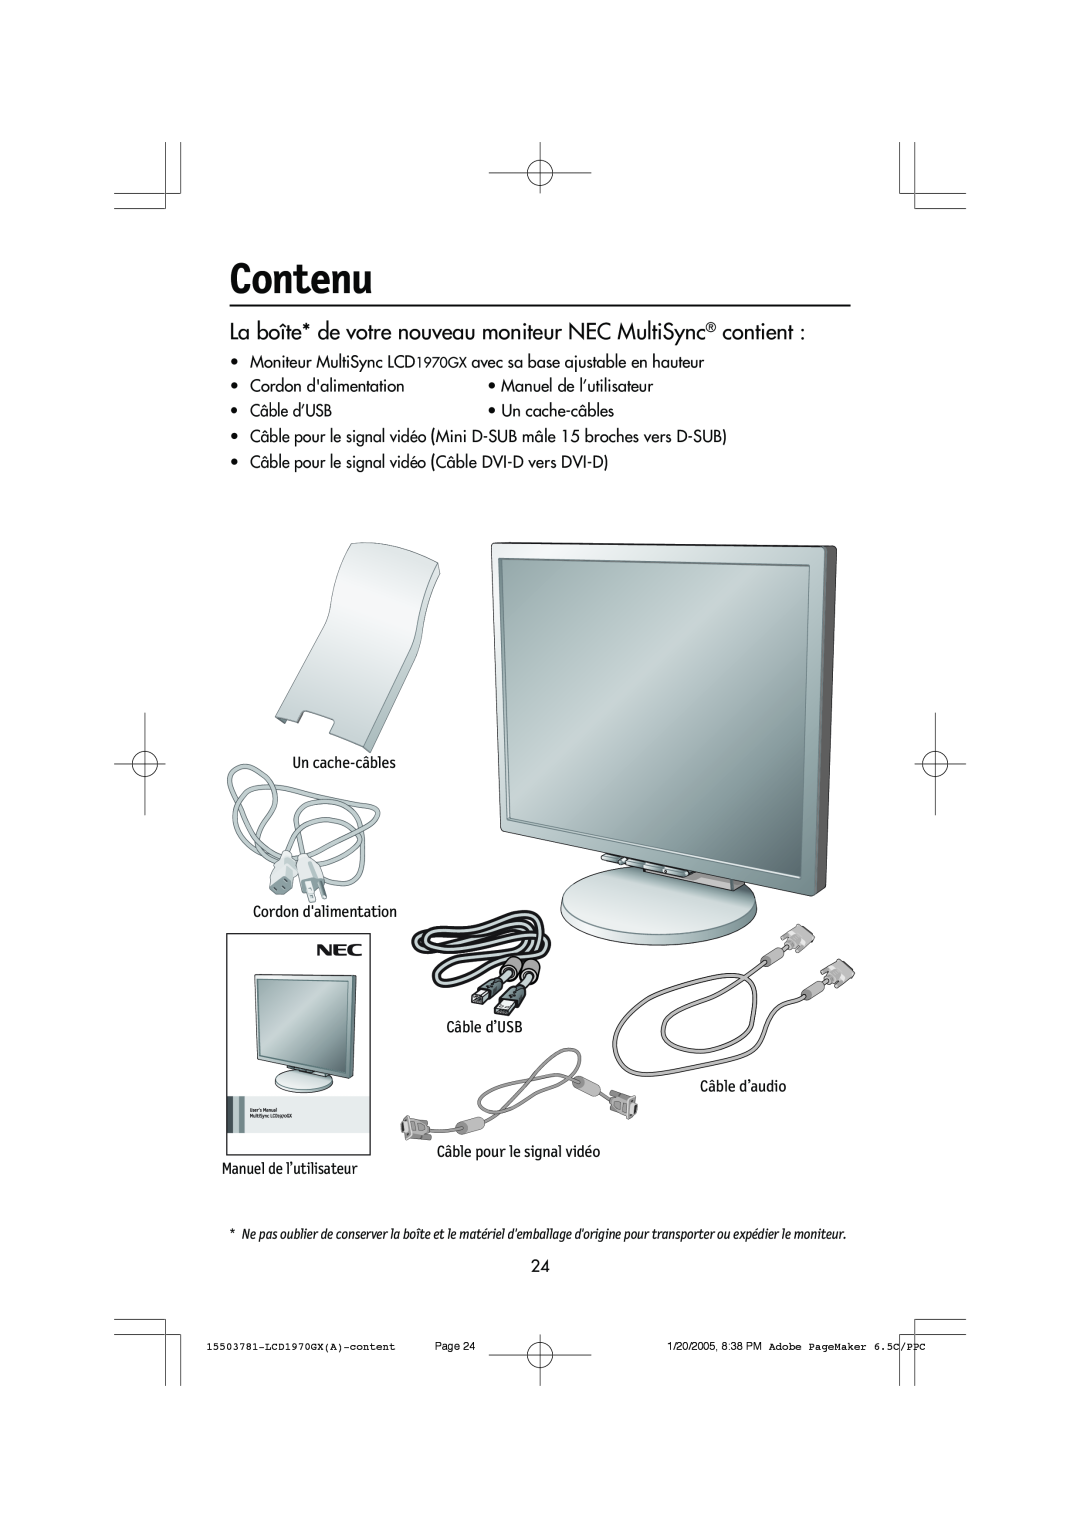 NEC LCD1970GX user manual Contenu 